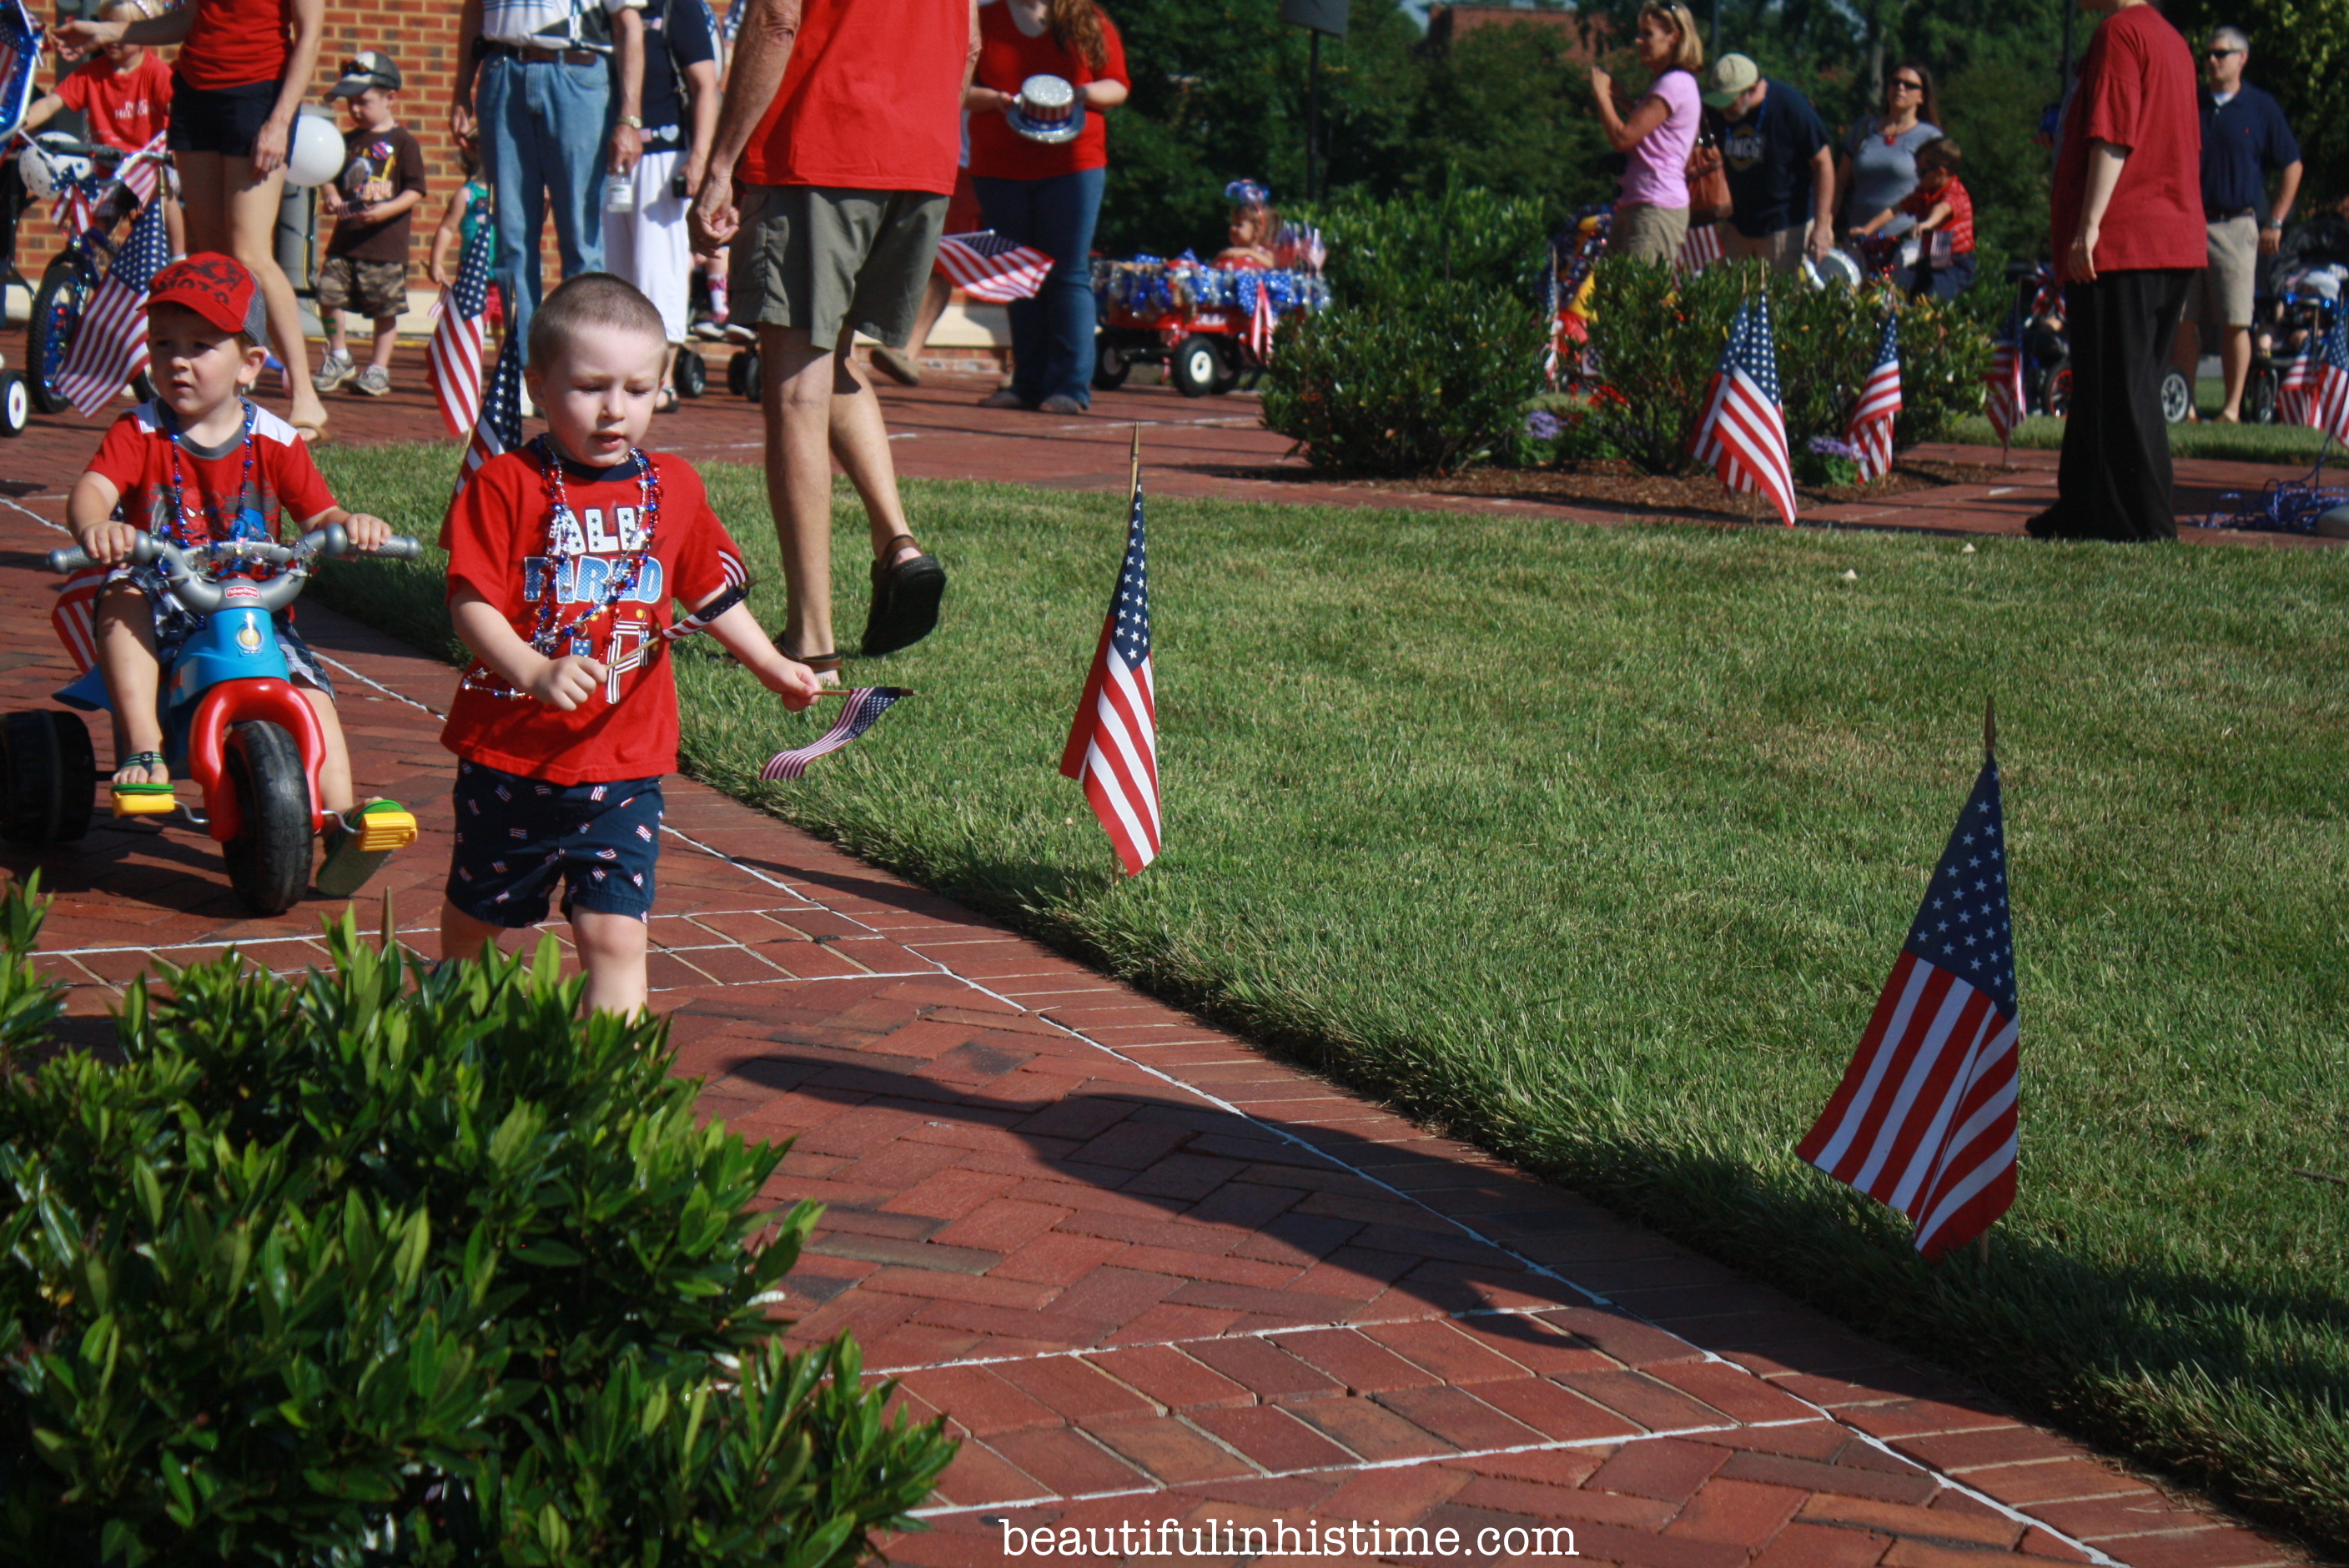 Patriotic Preschool Parade in Small-town North Carolina #patriotic #preschool #parade #4thofjuly #independenceday #Northcarolina